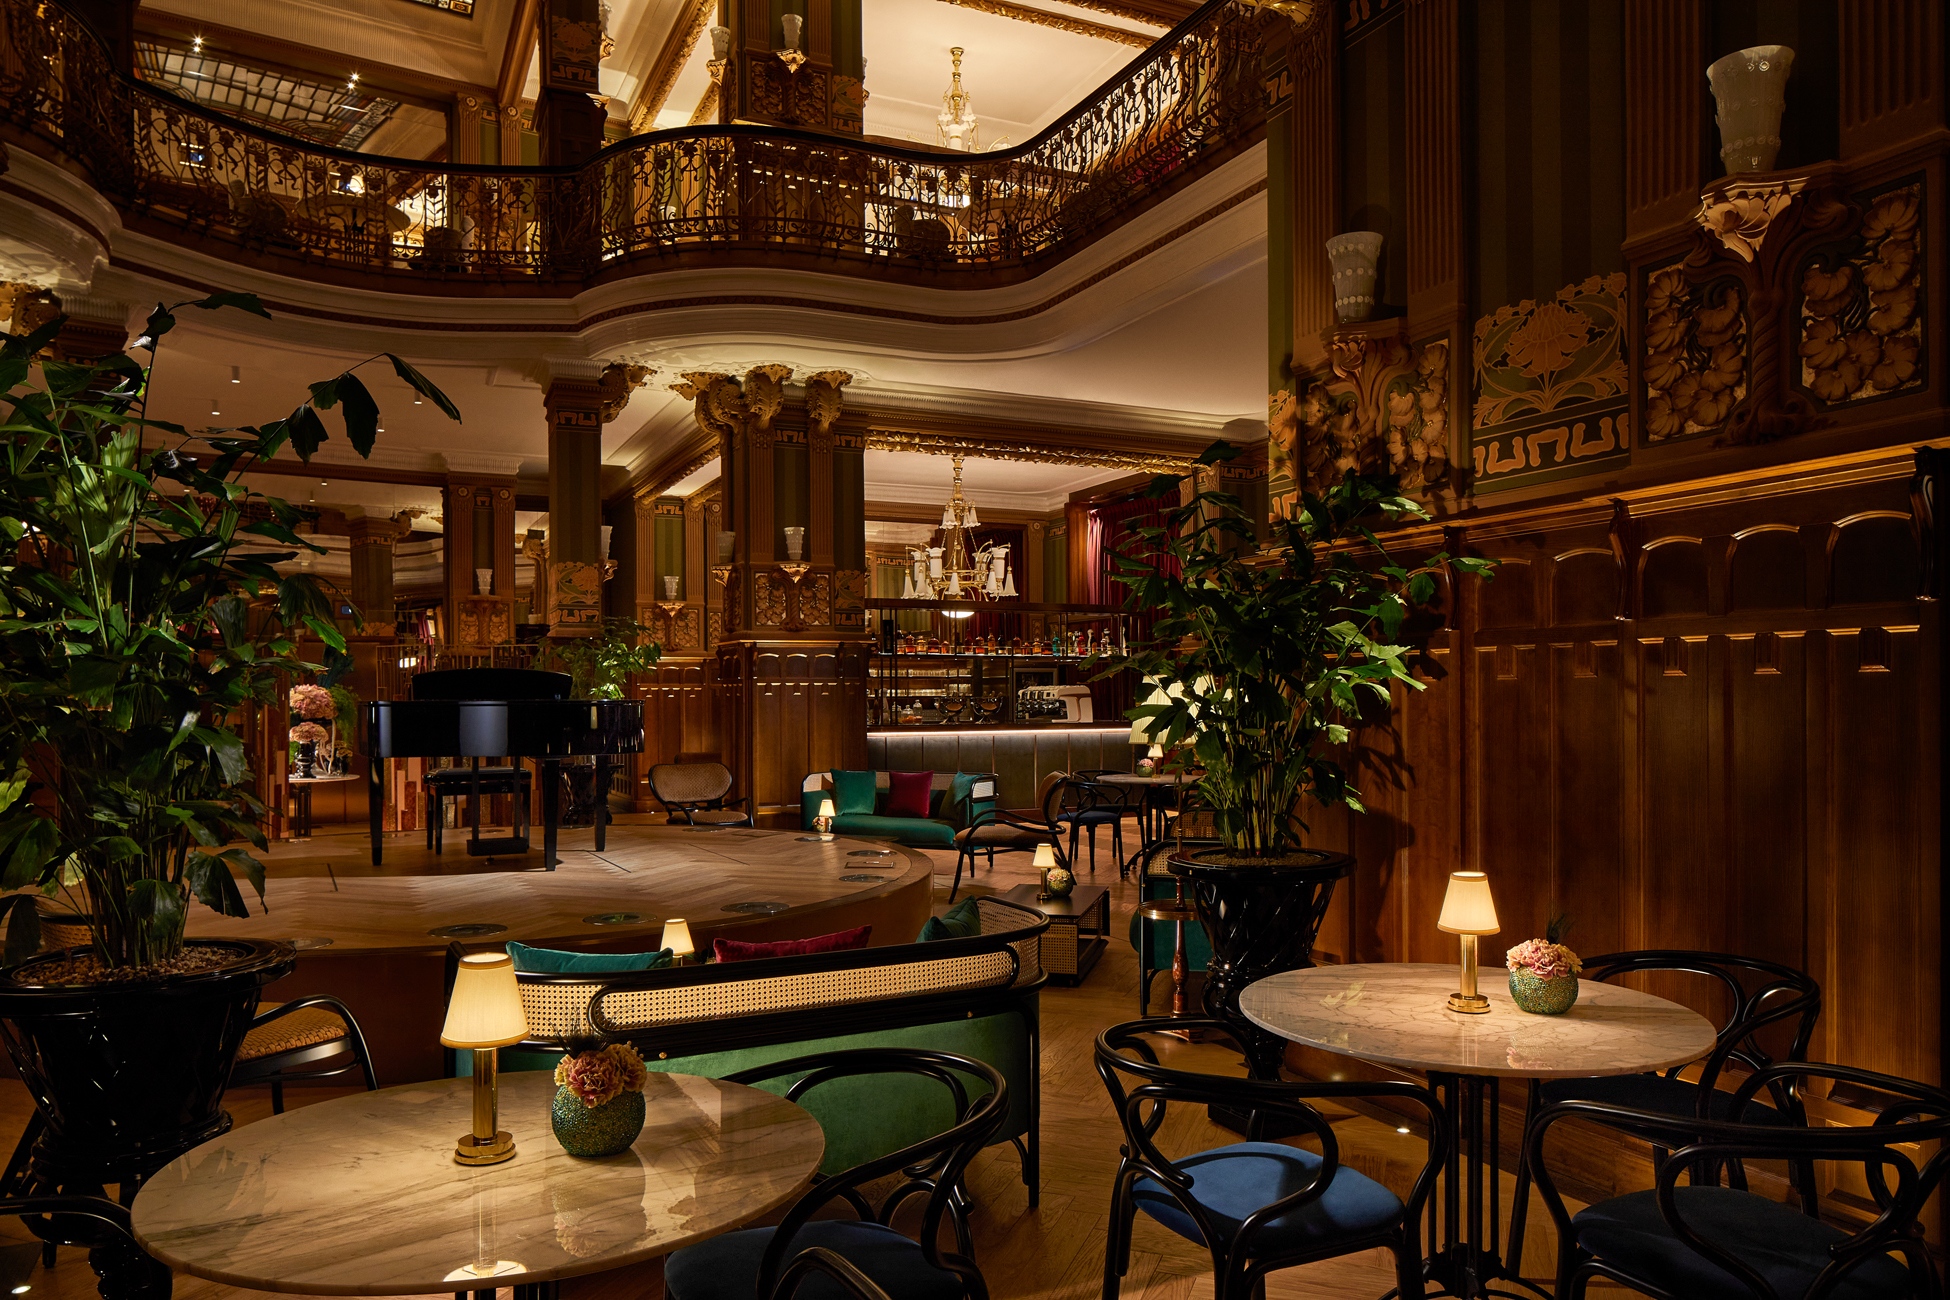 فندق ماتيلد بالاس لاكشريوس بودابست المجر مقهى وكاباريه مقهى